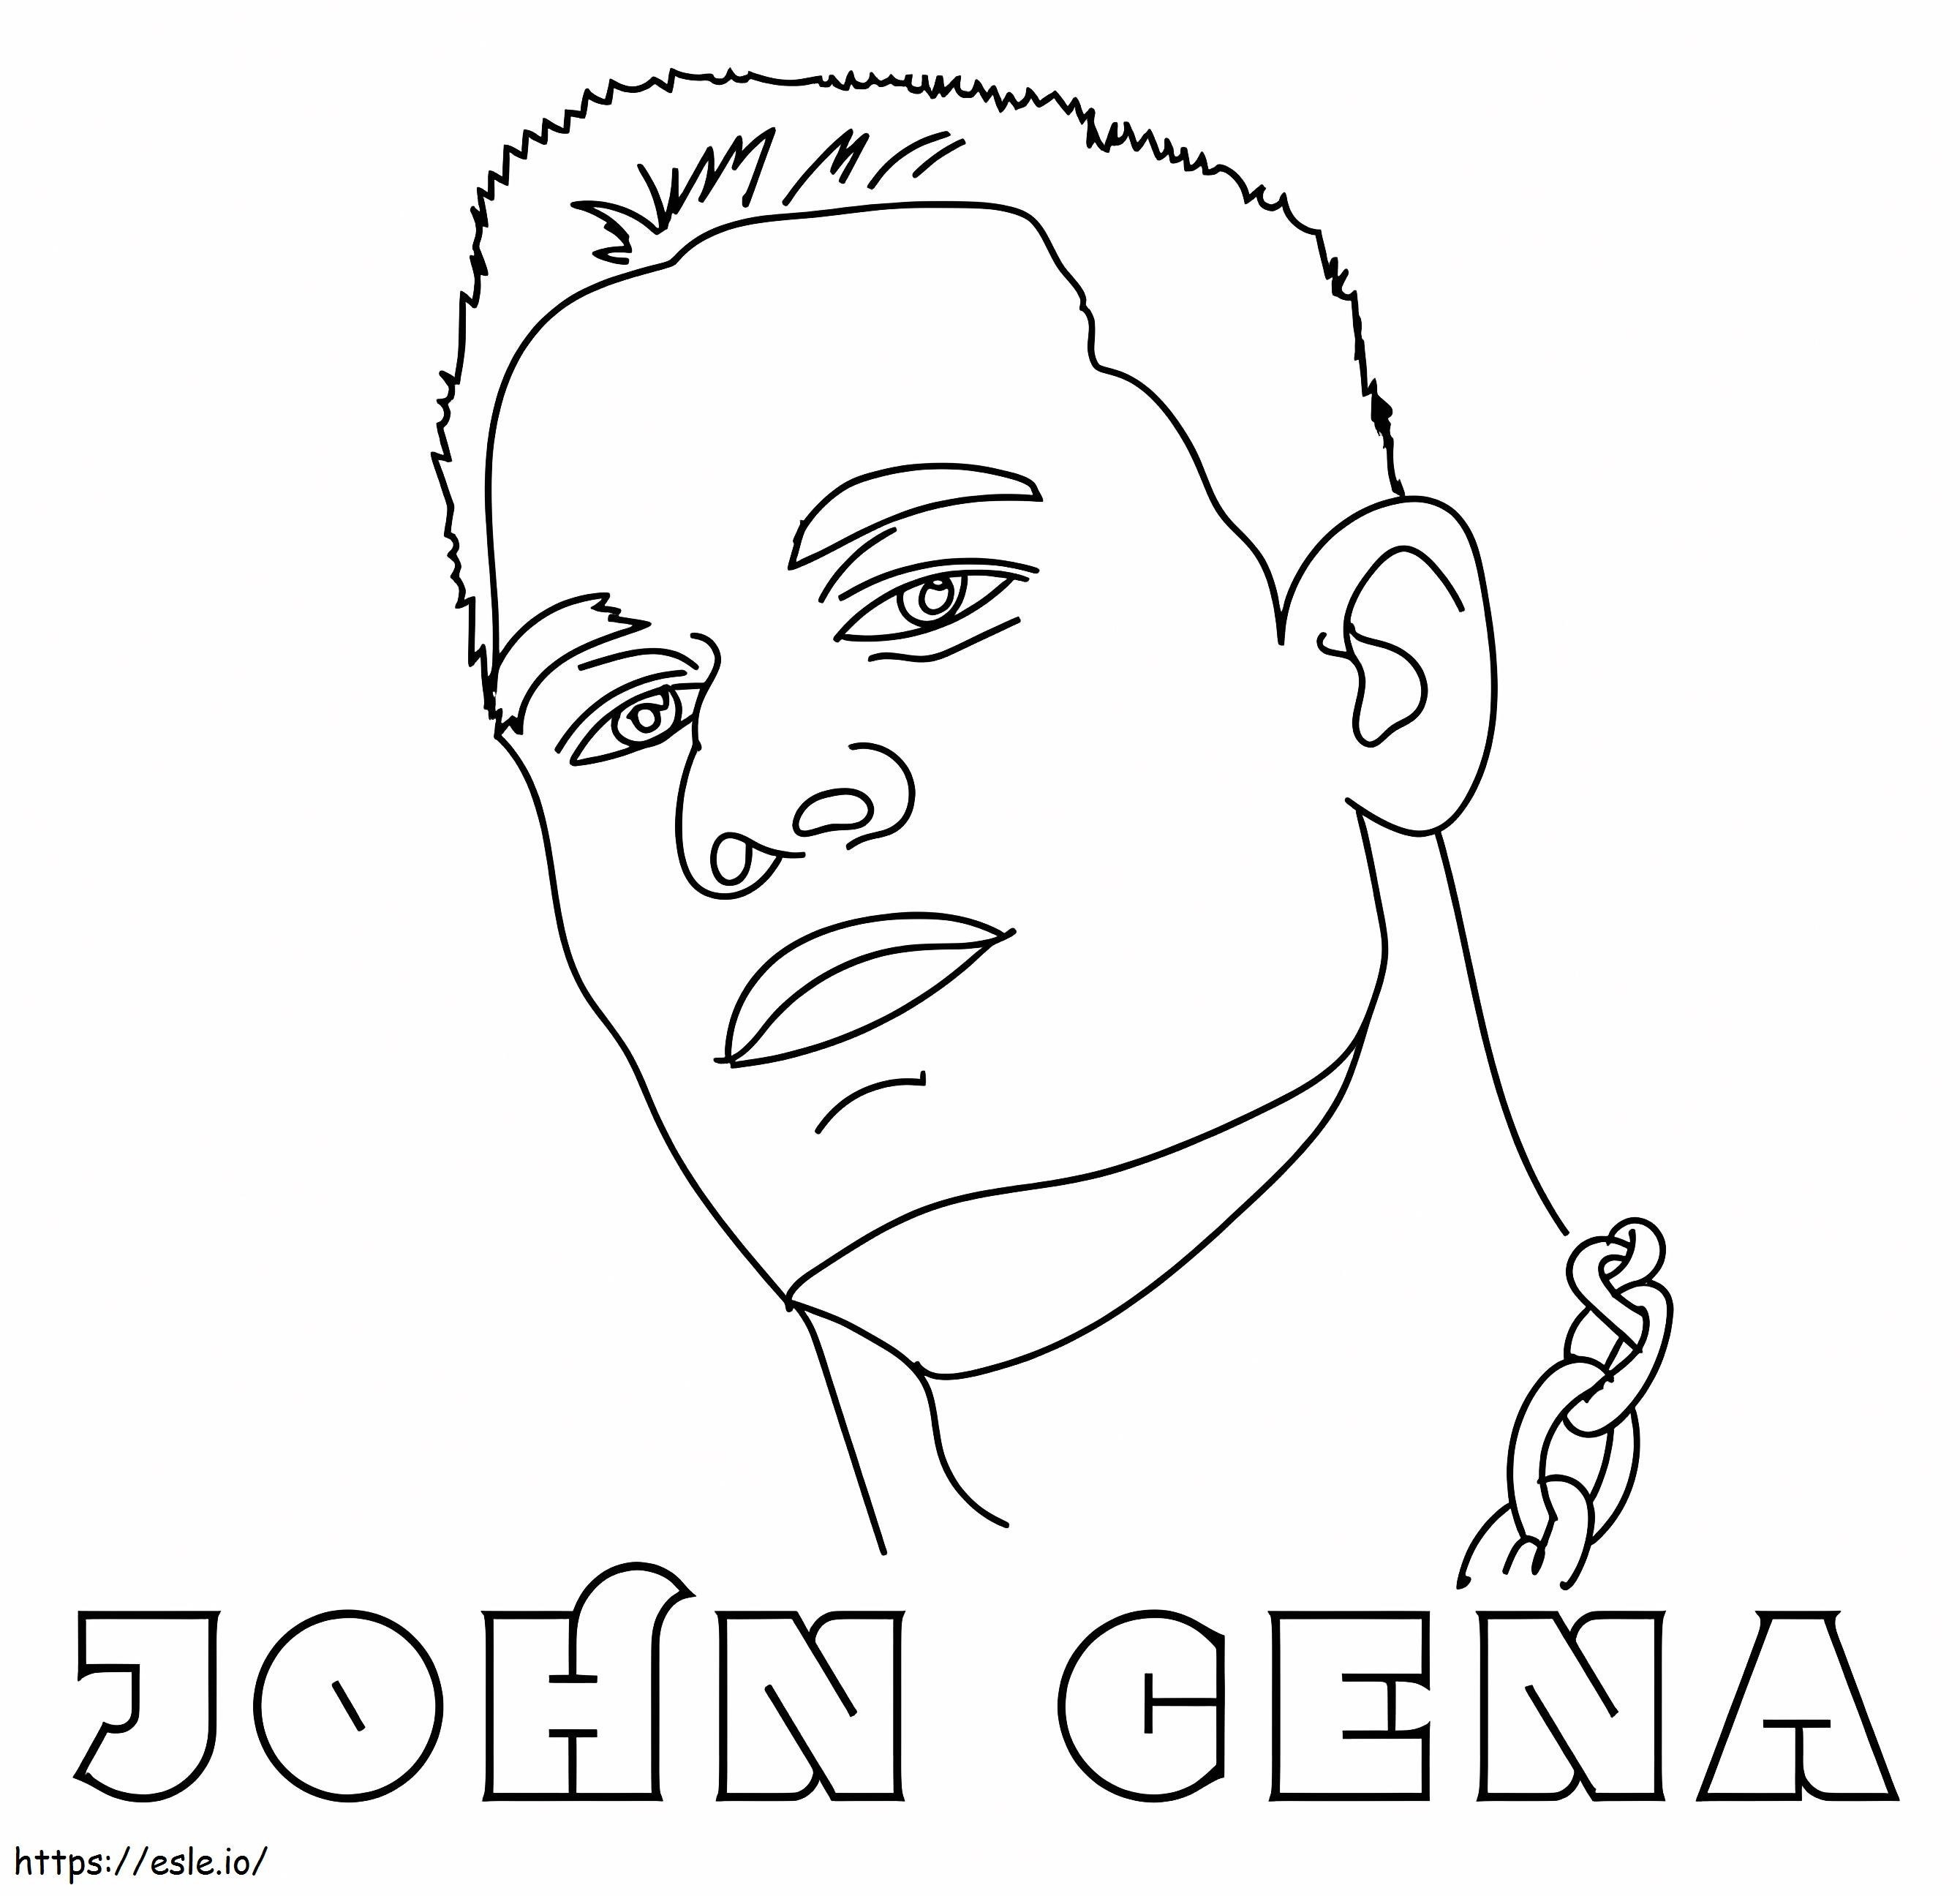 Rosto de John Cena para colorir